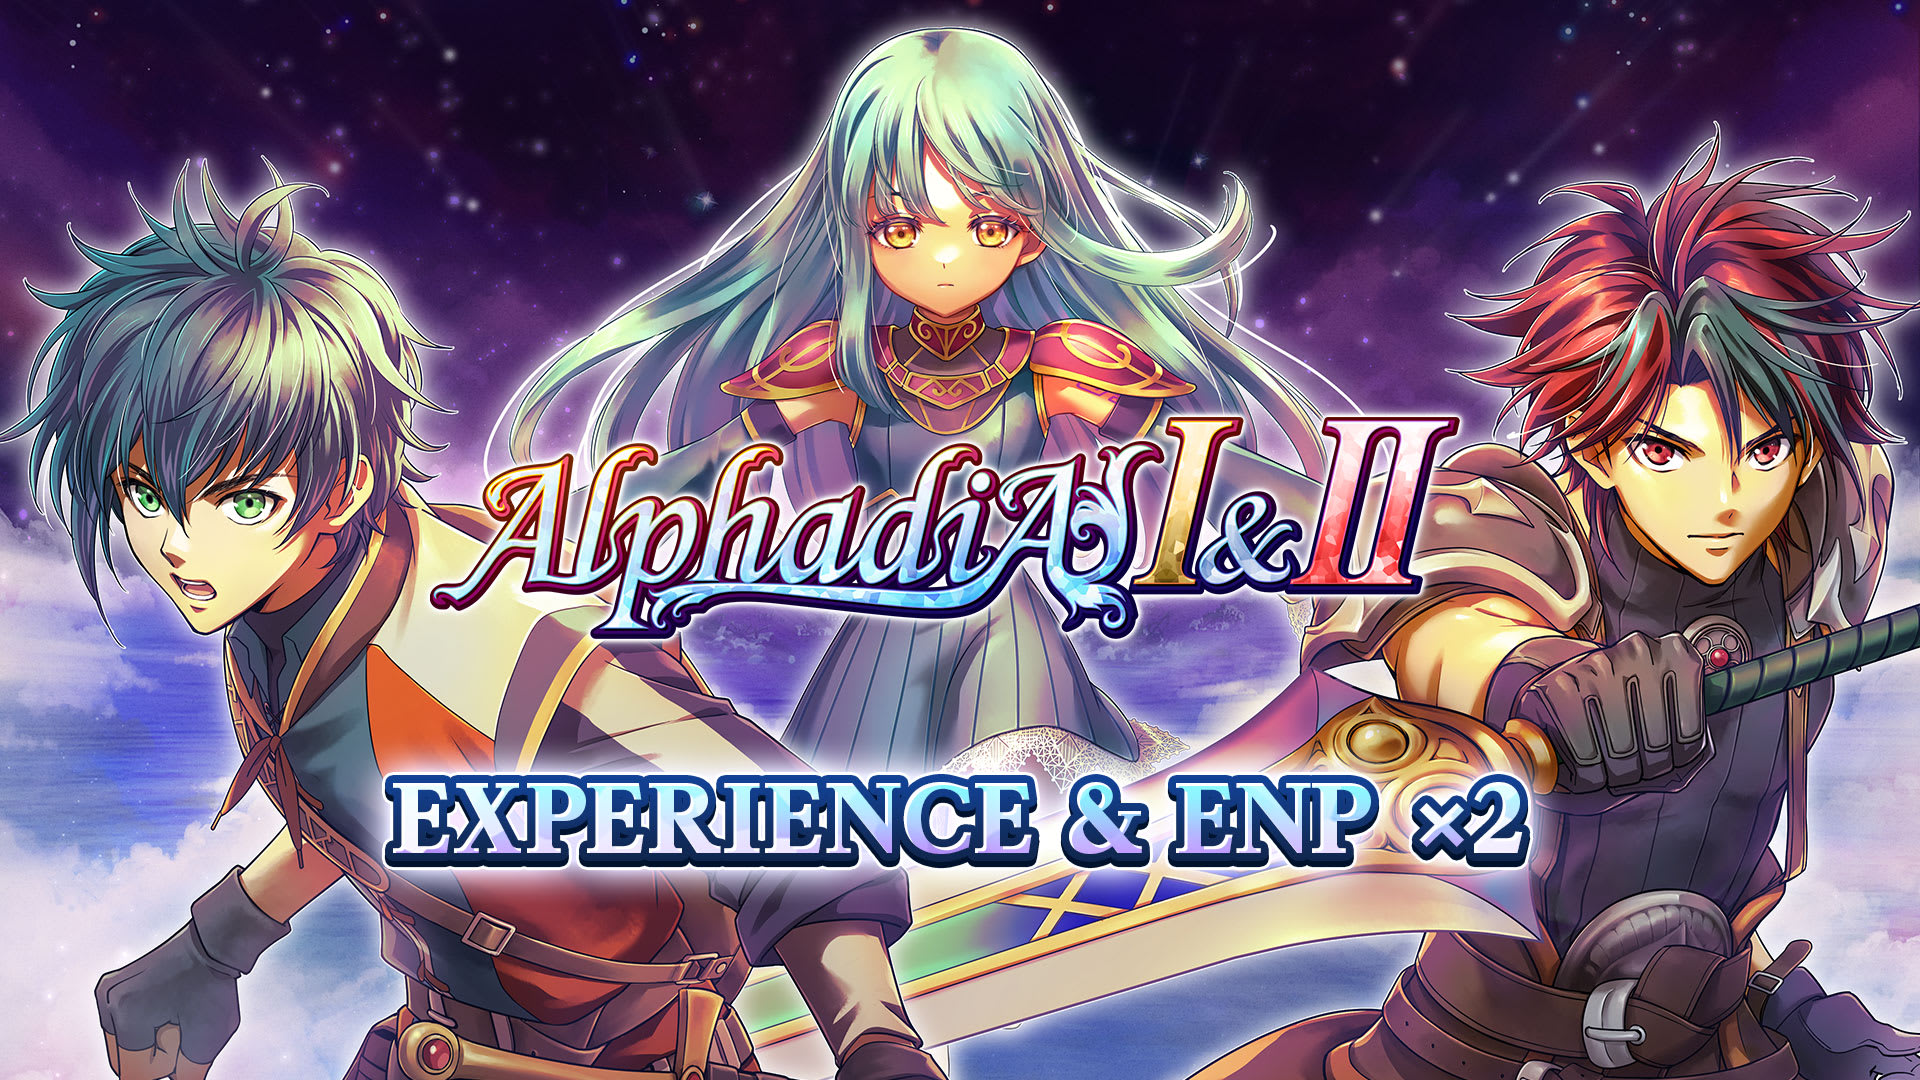 Experience & ENP x2 - Alphadia I & II